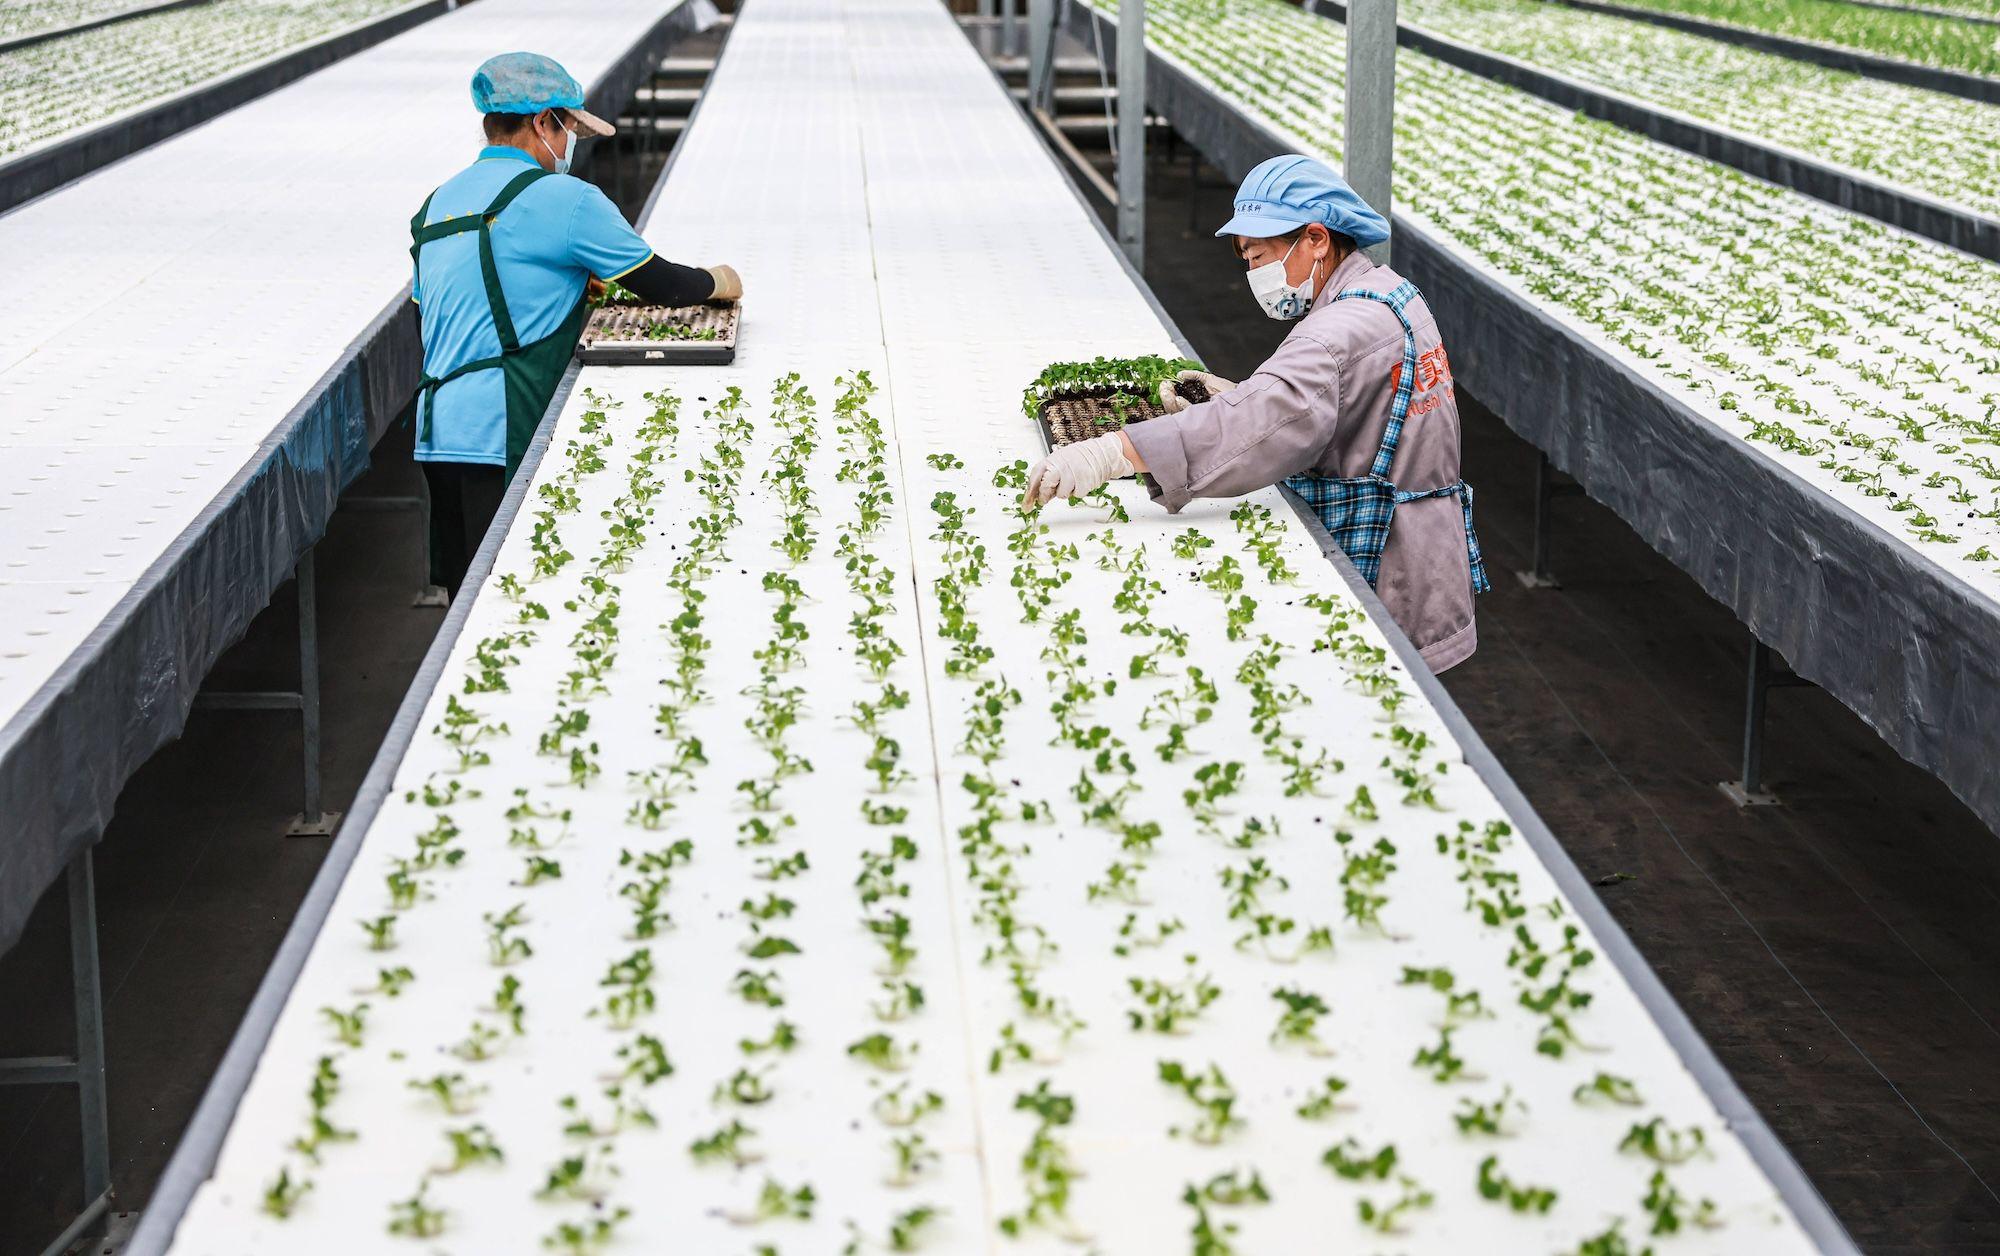 Arbeiter arrangieren Gemüsesetzlinge in einem intelligenten Gewächshaus in Shenyang, Provinz Liaoning, China.